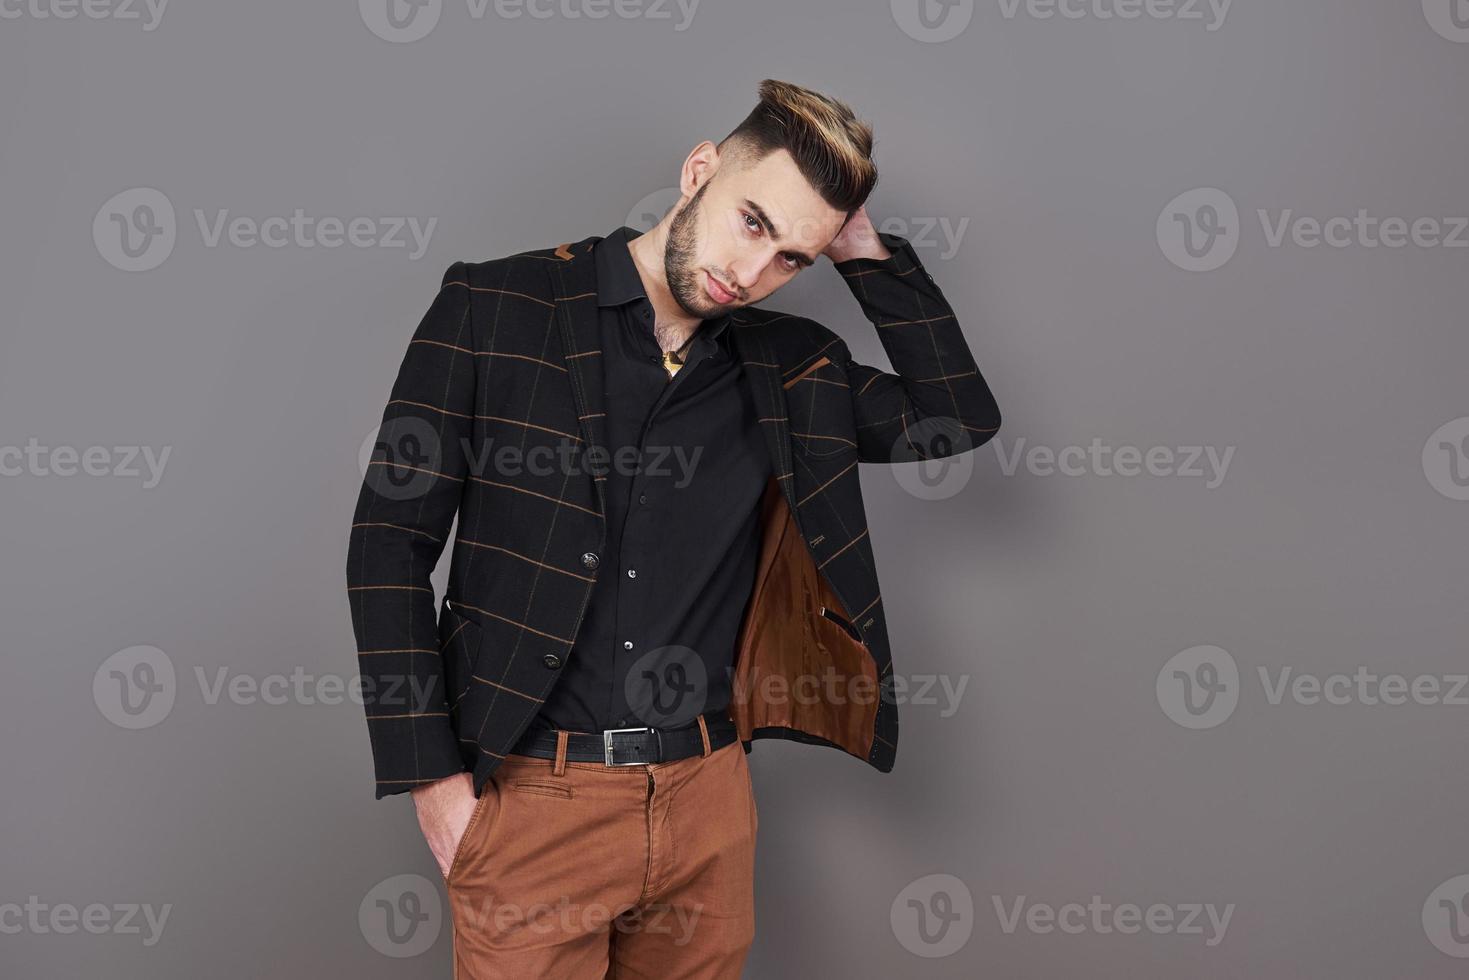 Exitoso joven empresario con un traje marrón con una hermosa sonrisa genuina posando sobre un fondo gris oscuro con espacio de copia foto